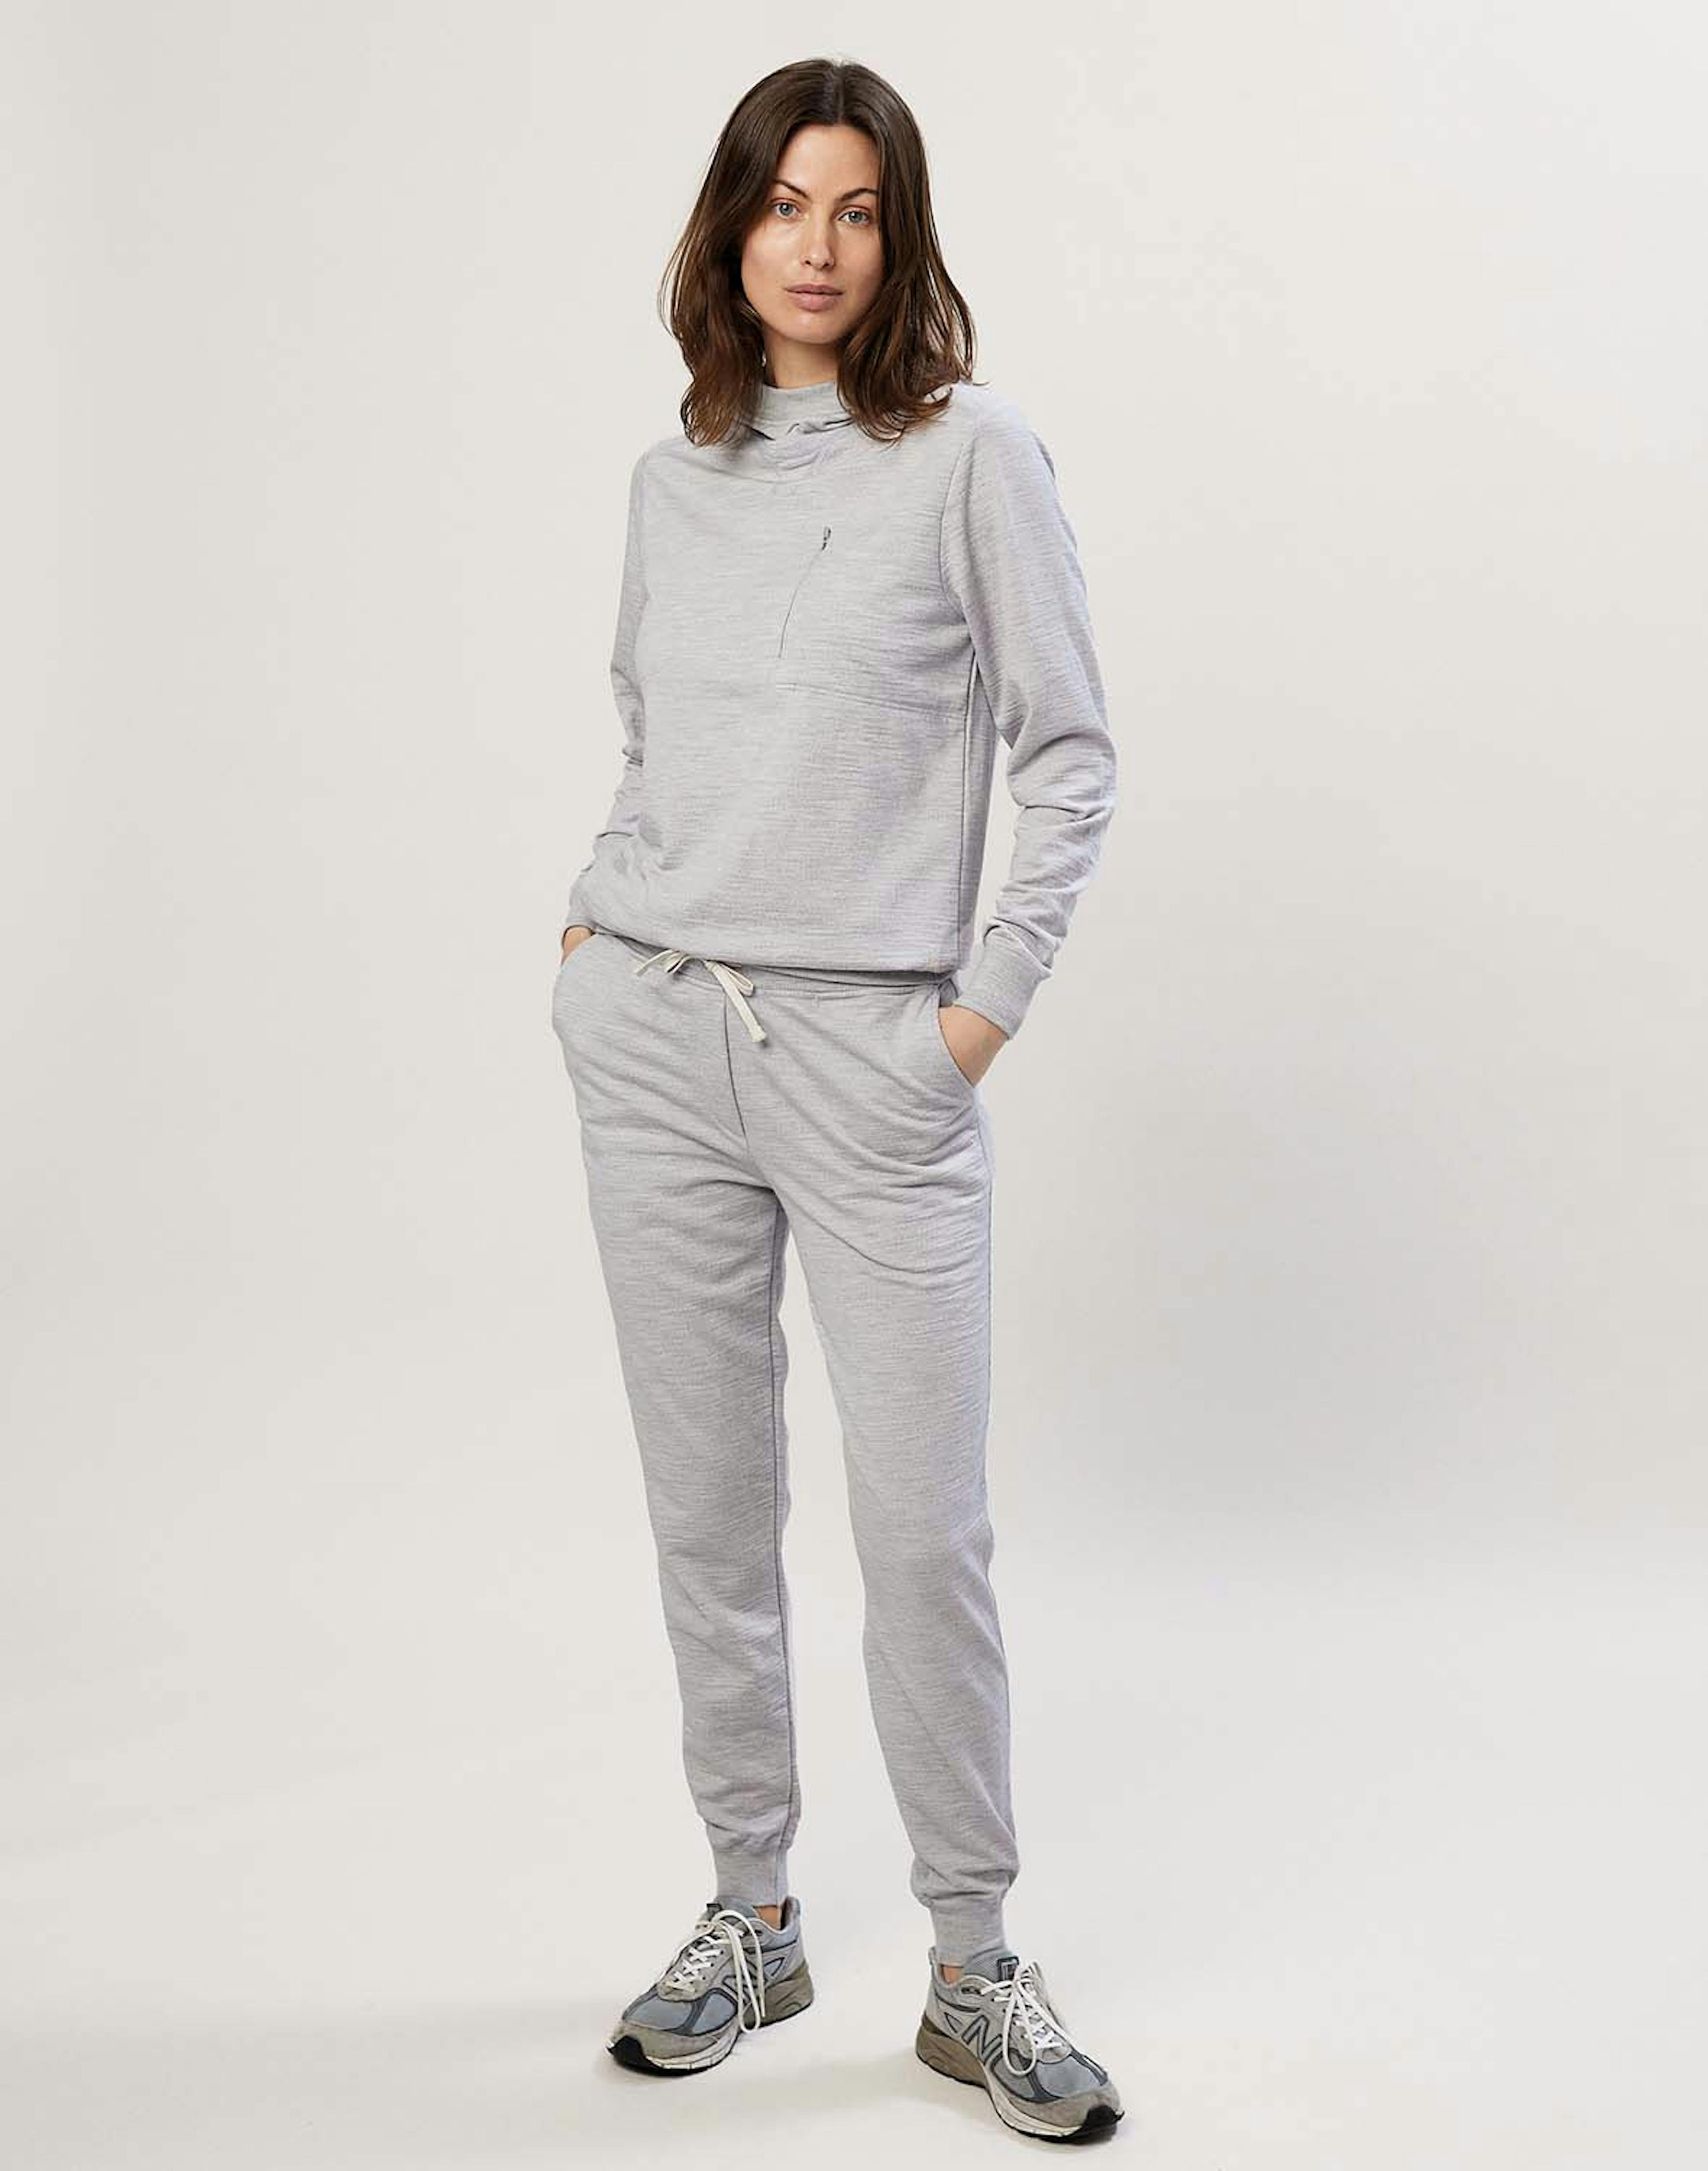 Pantalon de jogging avec poches en laine mérinos pour femme - Gris